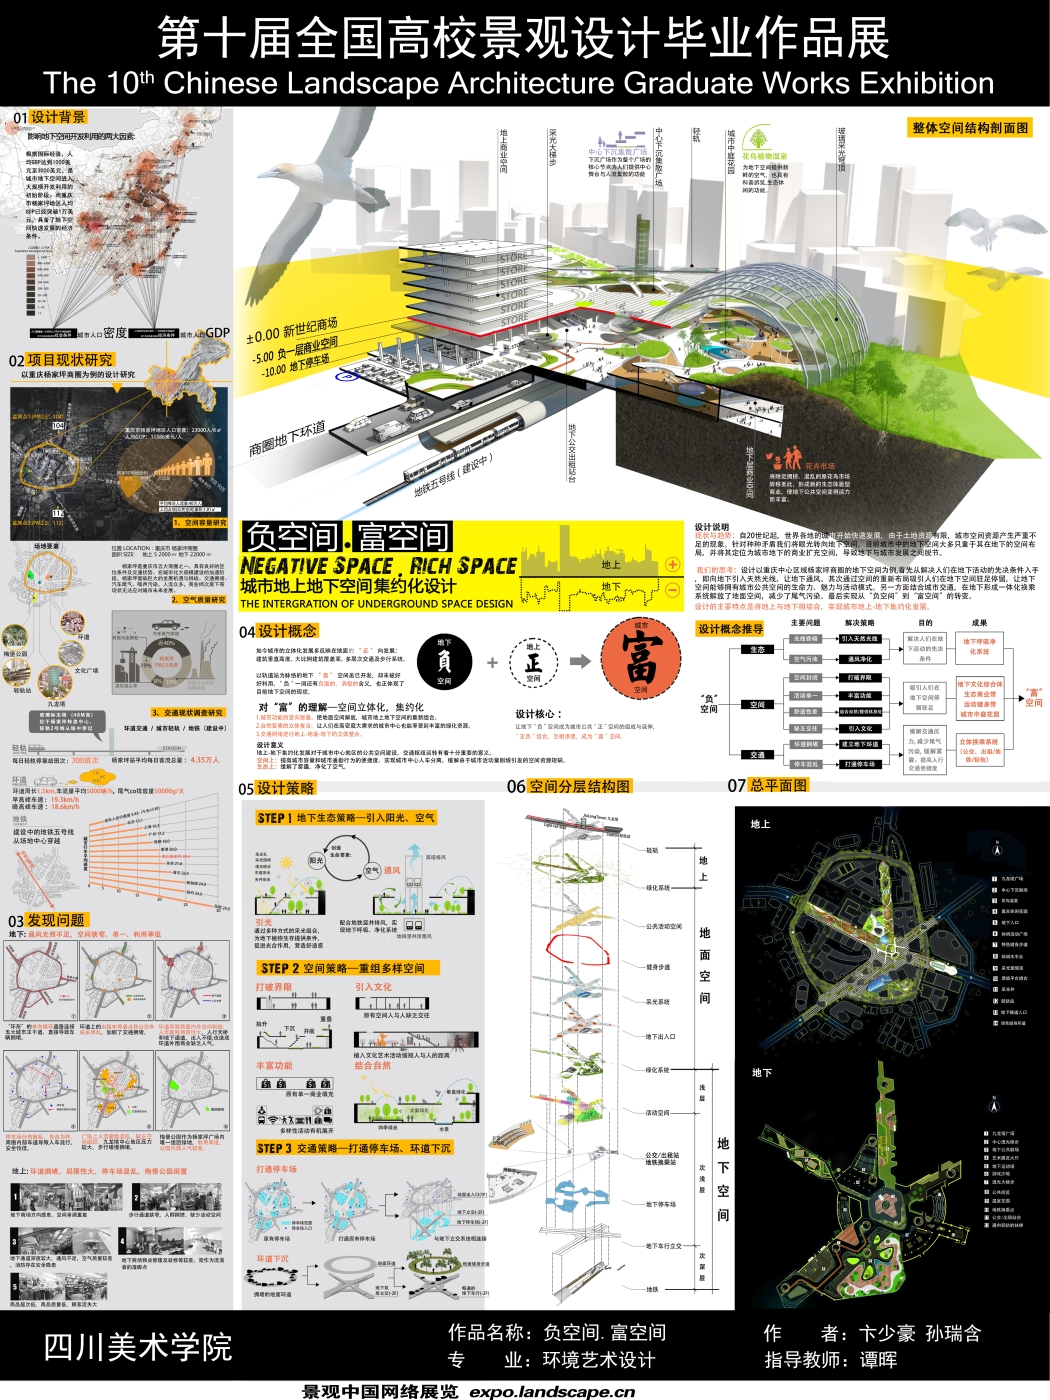 负空间 富空间—城市地上地下空间集约化设计-1